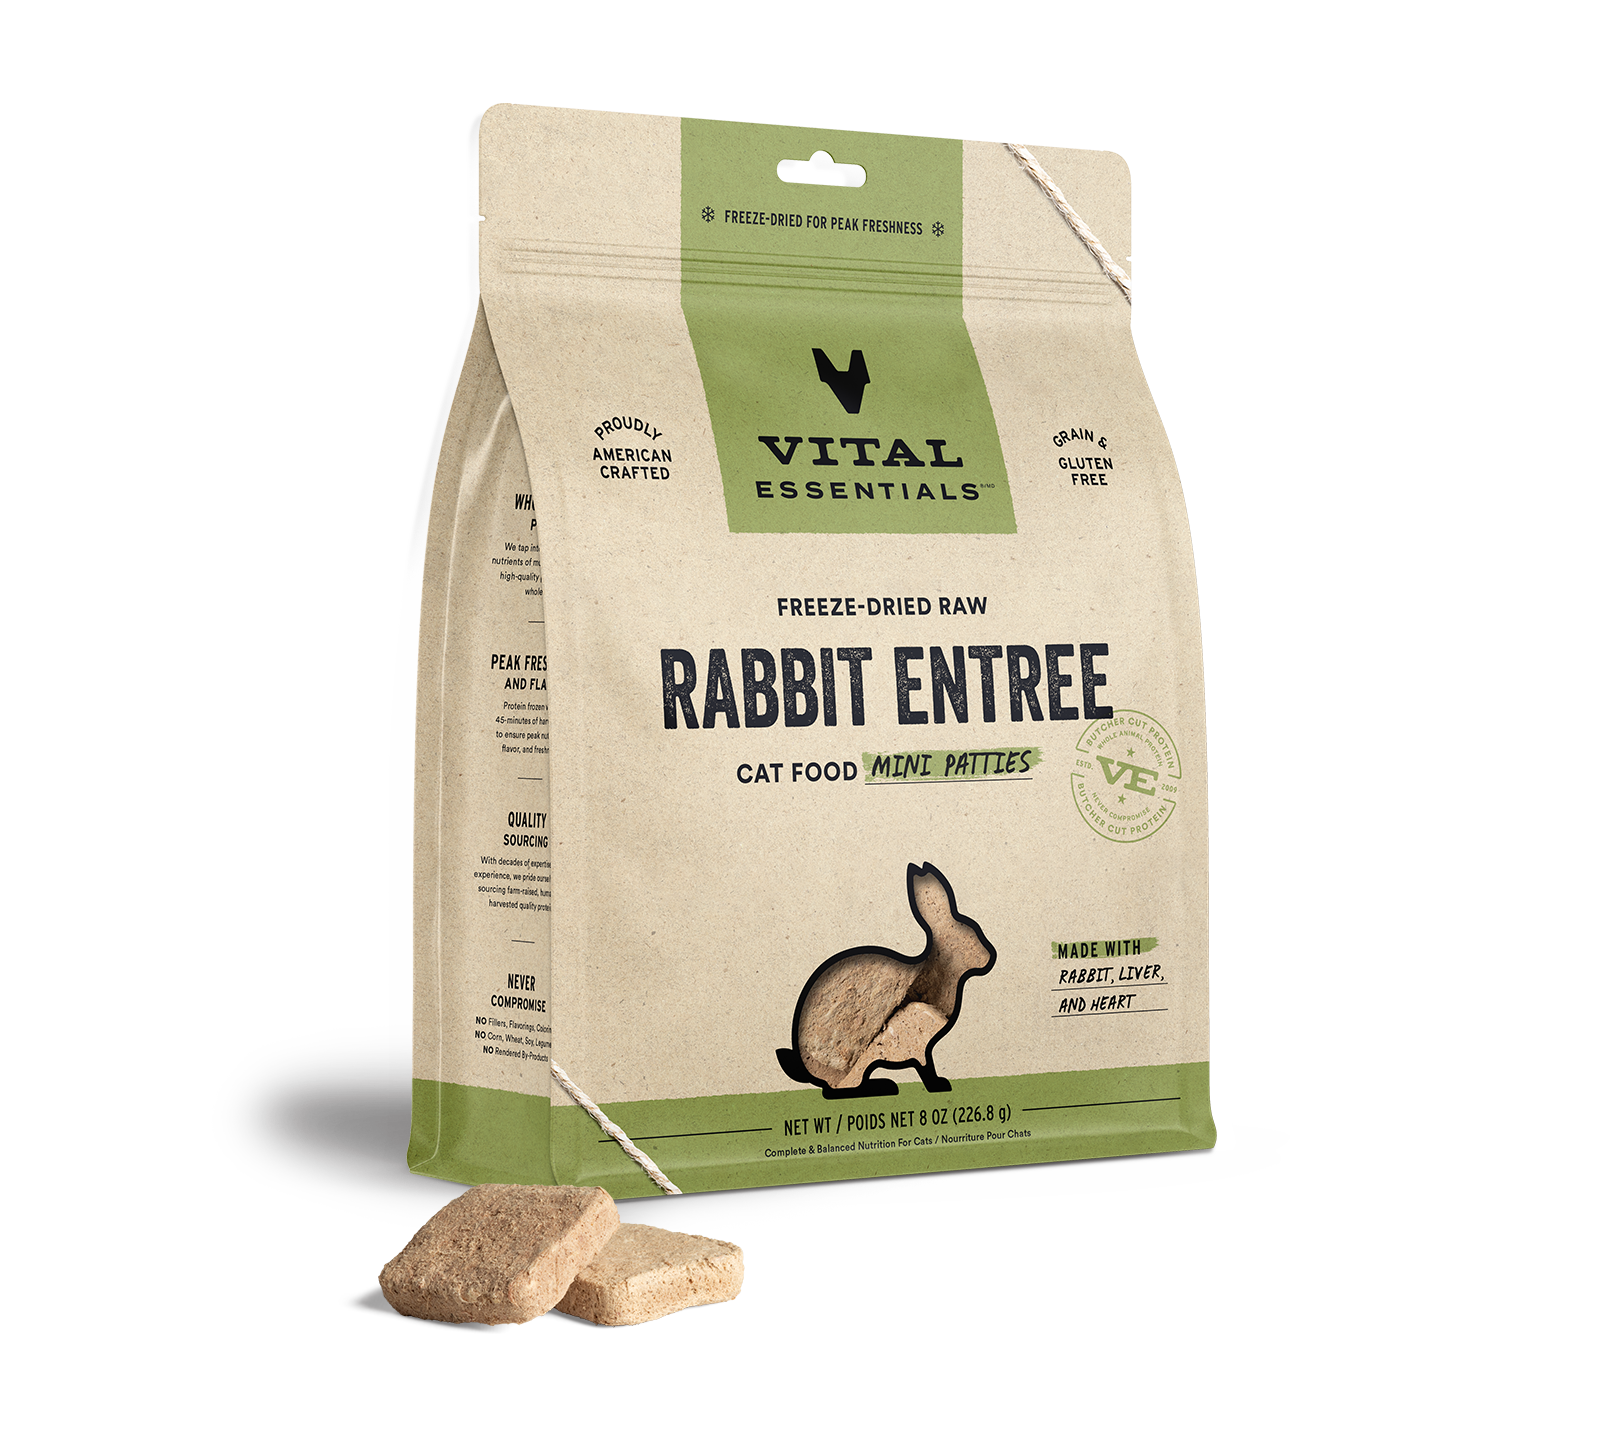 Vital Essentials Freeze-Dried Raw Rabbit Entree Cat Food Mini Patties, 8 oz - Treats